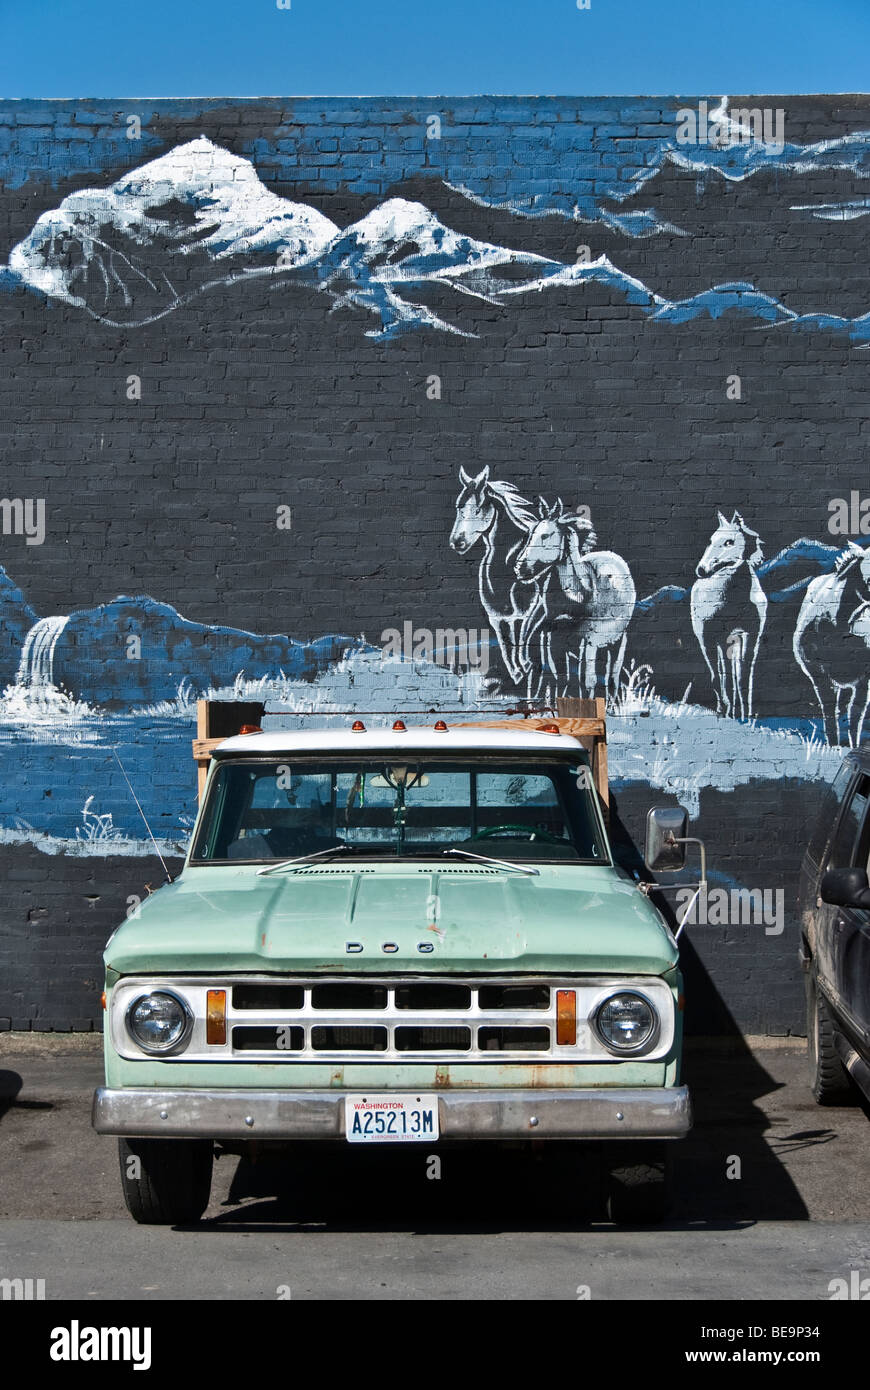 Fin des années 60, vieux camion Dodge garé en face de la fresque peinte sur un mur de briques représentant des chevaux sauvages s'exécutant en pays foothill Banque D'Images